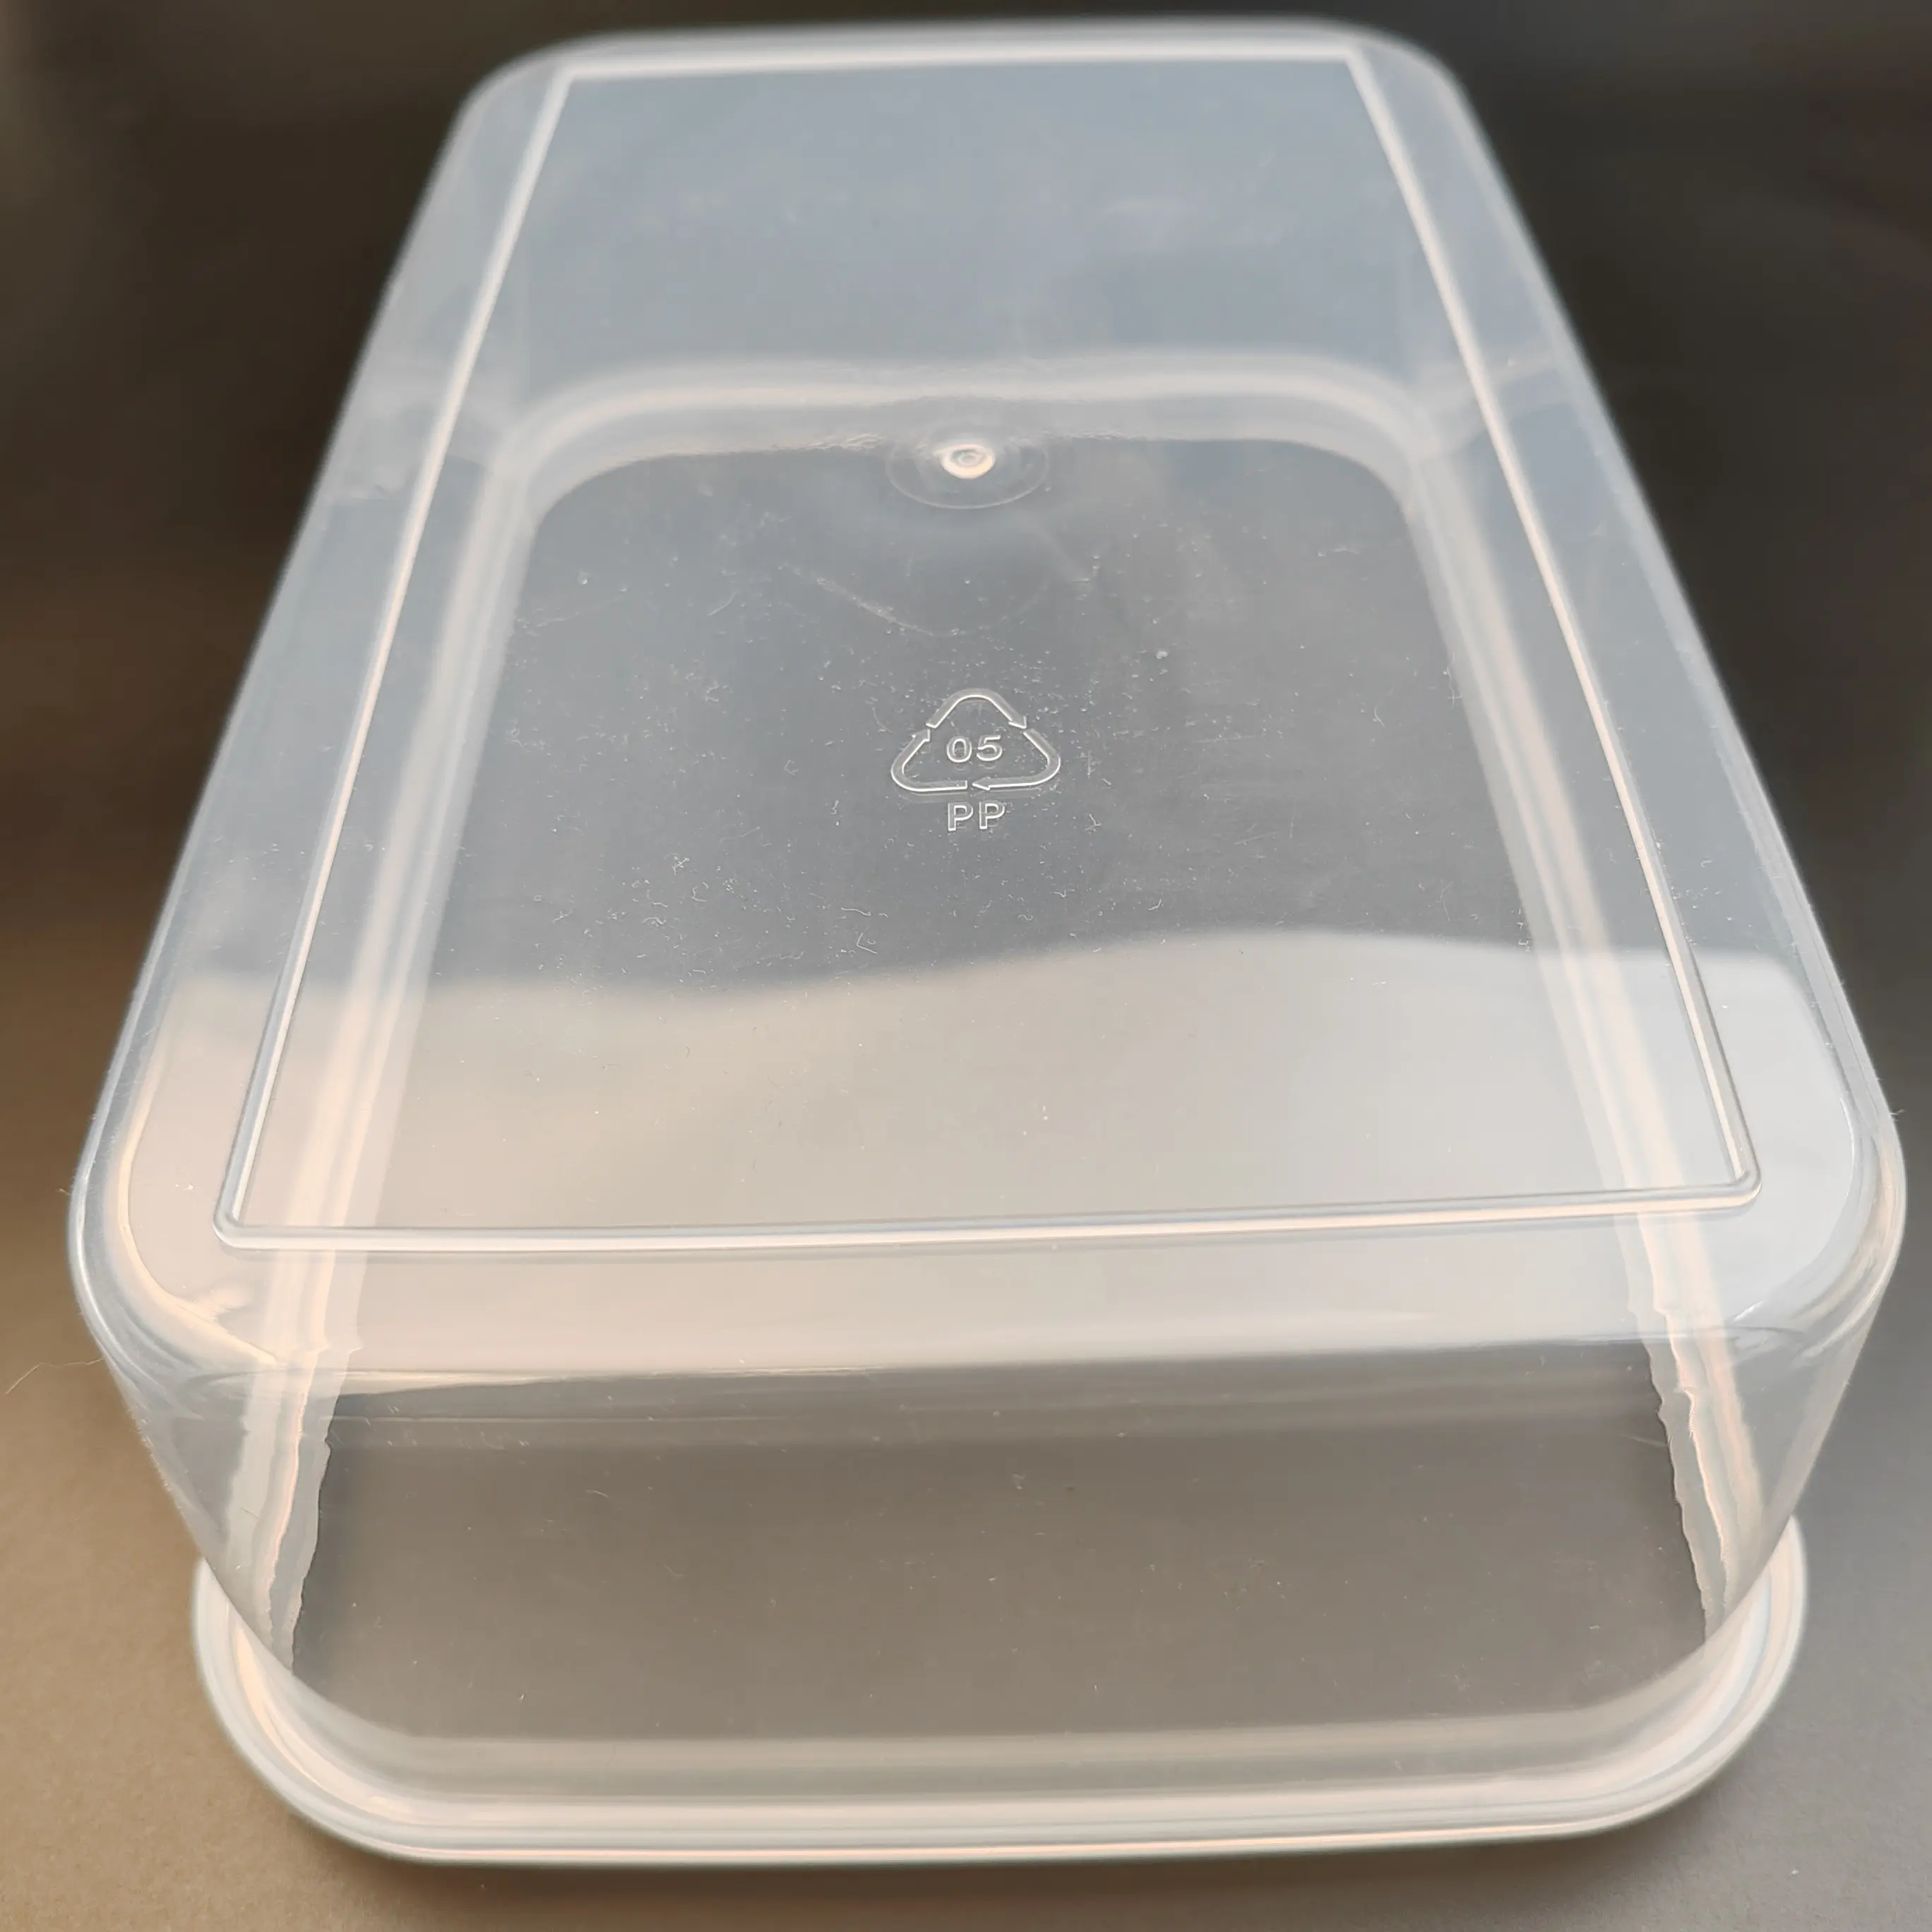 منظم المطبخ برطمان تخزين ثلاجة الغذاء المختوم حاوية الحاويات الحافظة على الغذاء الطازج صندوق تخزين مع الغطاء